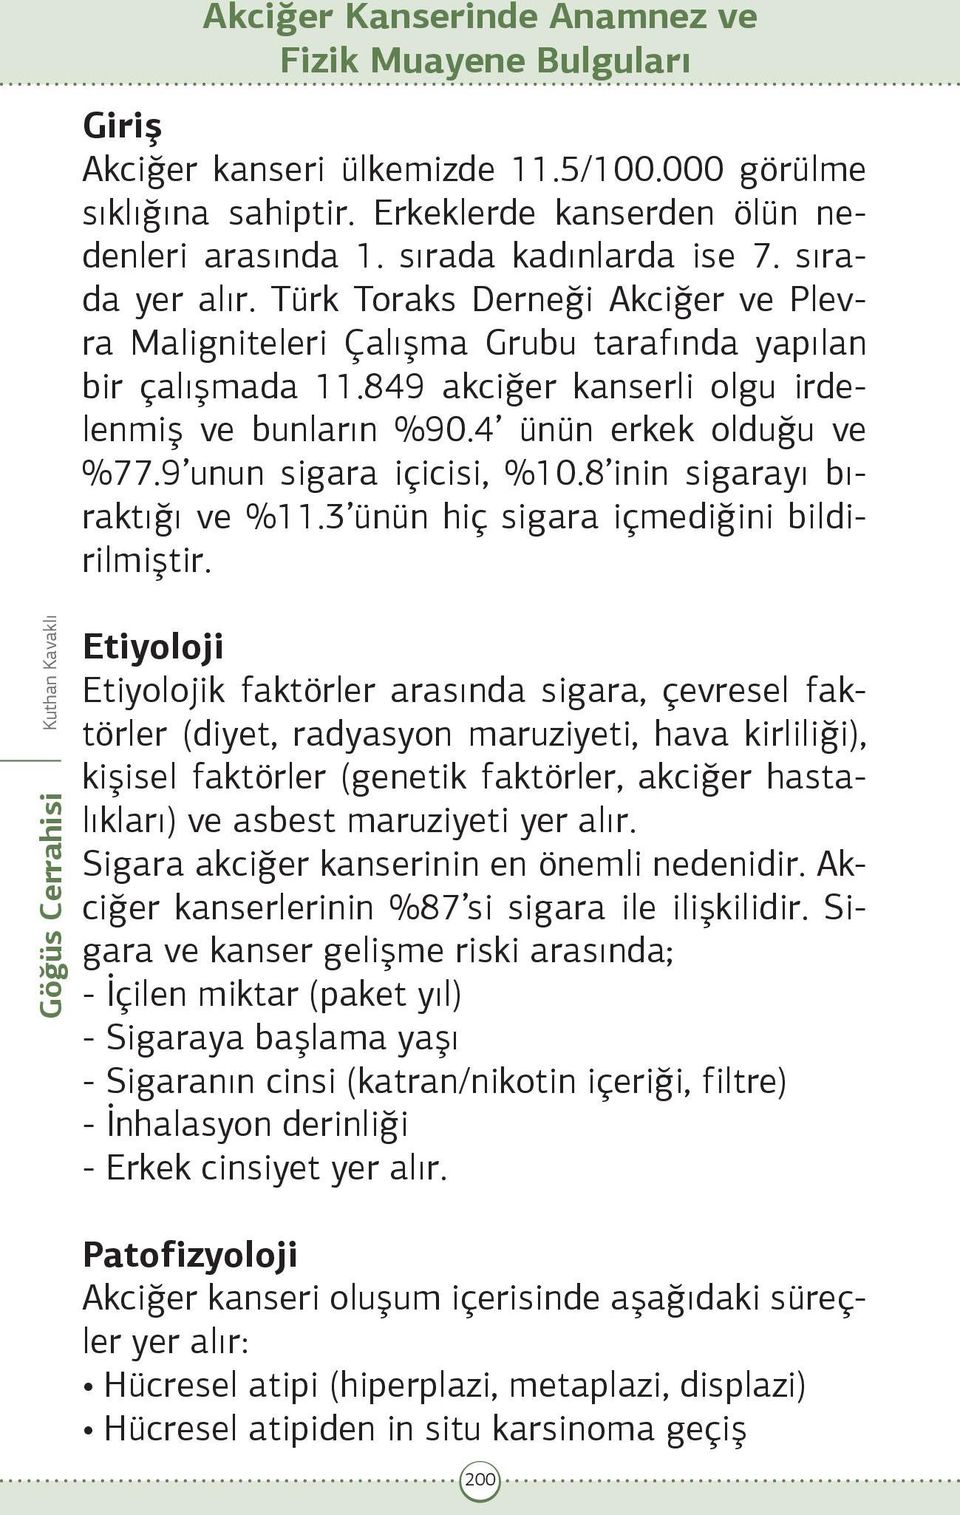 Türk Toraks Derneği Akciğer ve Plevra Maligniteleri Çalışma Grubu tarafında yapılan bir çalışmada 11.849 akciğer kanserli olgu irdelenmiş ve bunların %90.4 ünün erkek olduğu ve %77.